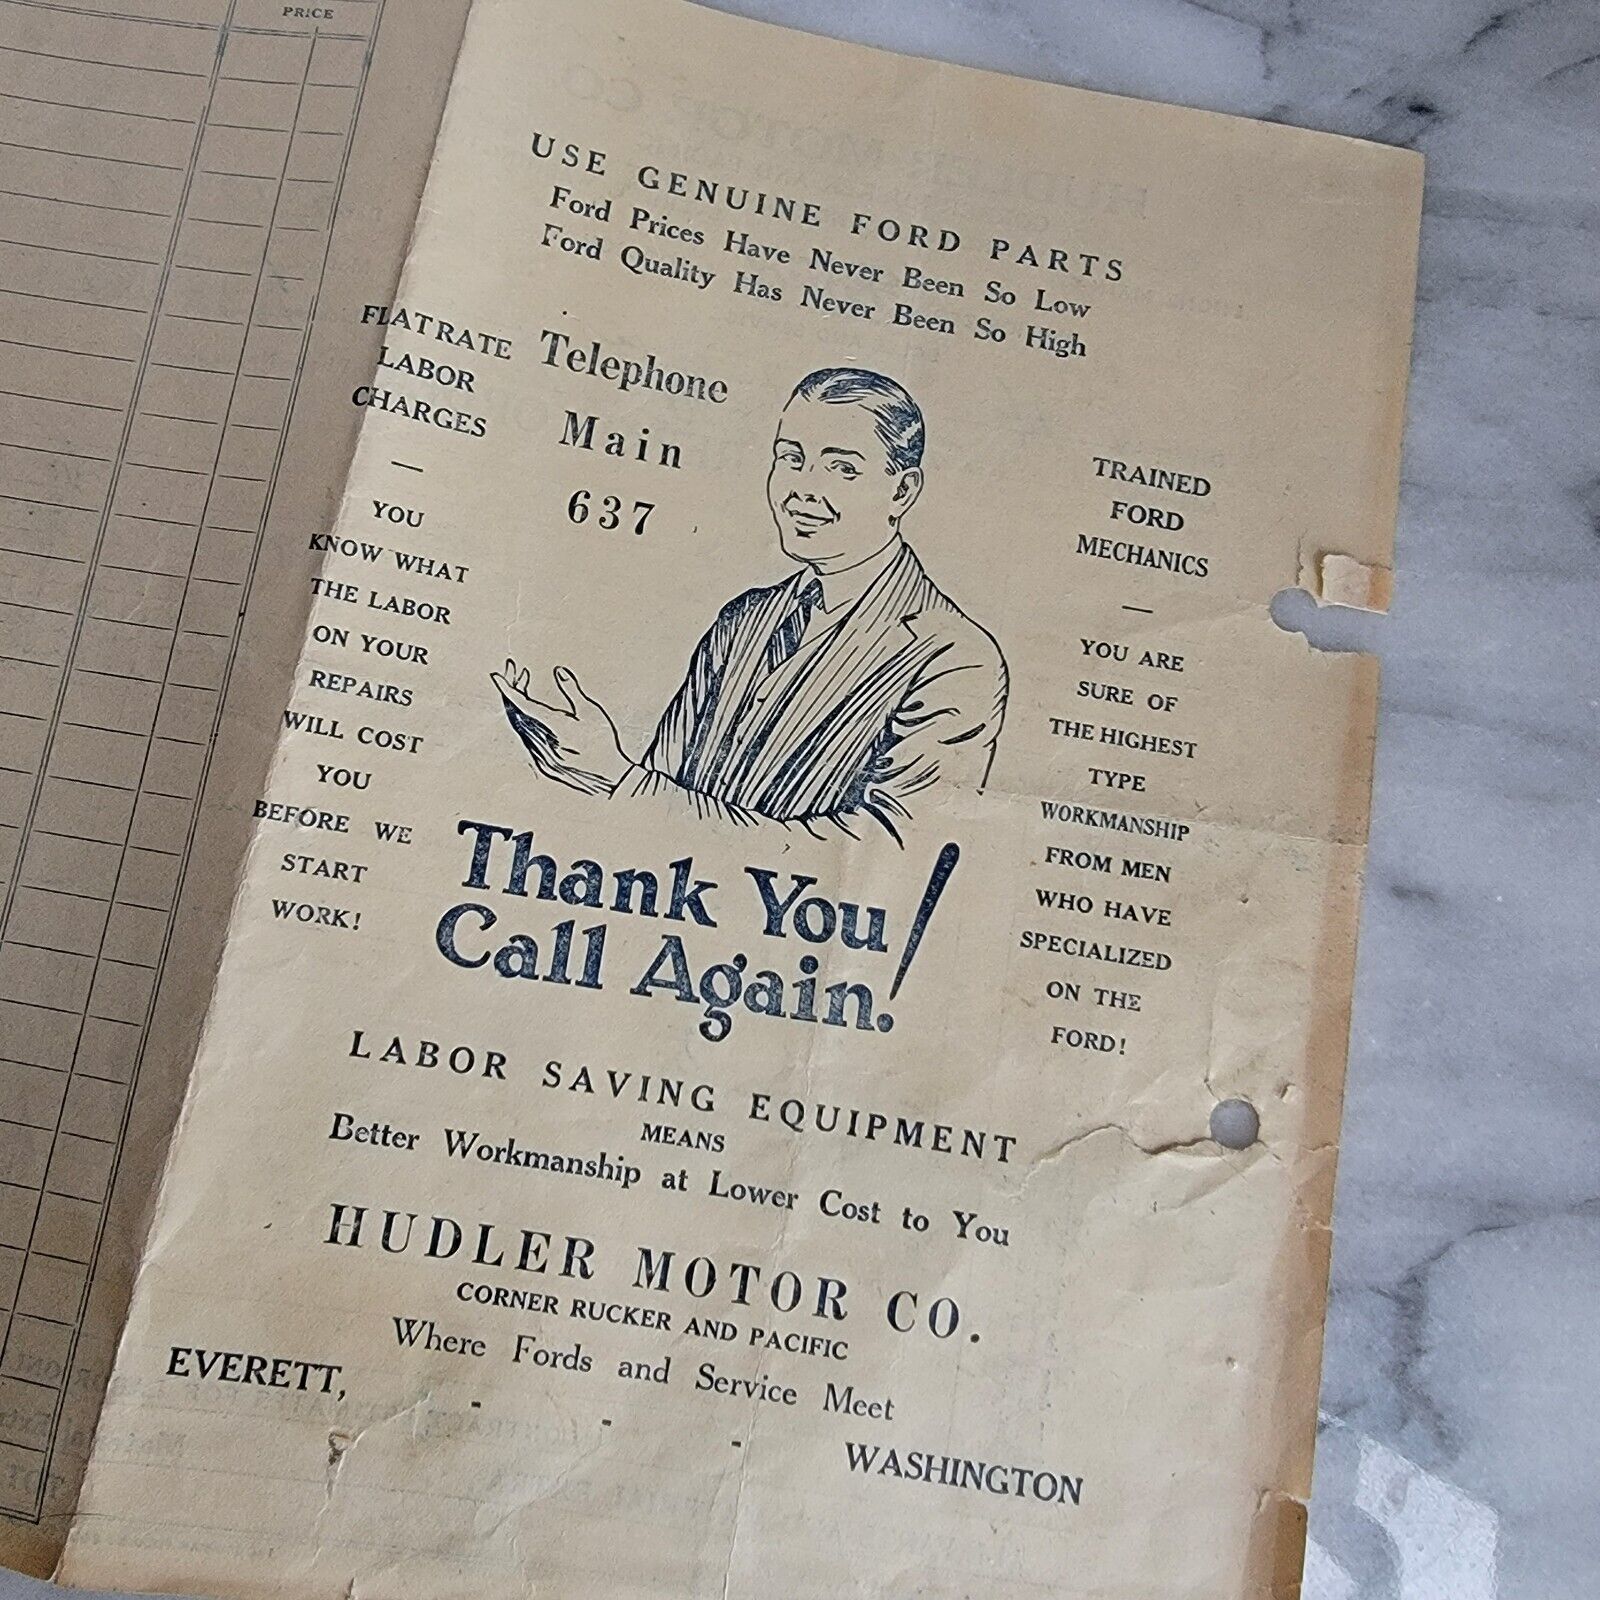 1929 Ford Car Repair Invoice Receipt Everett, Washington Hudler Motor Co VTG